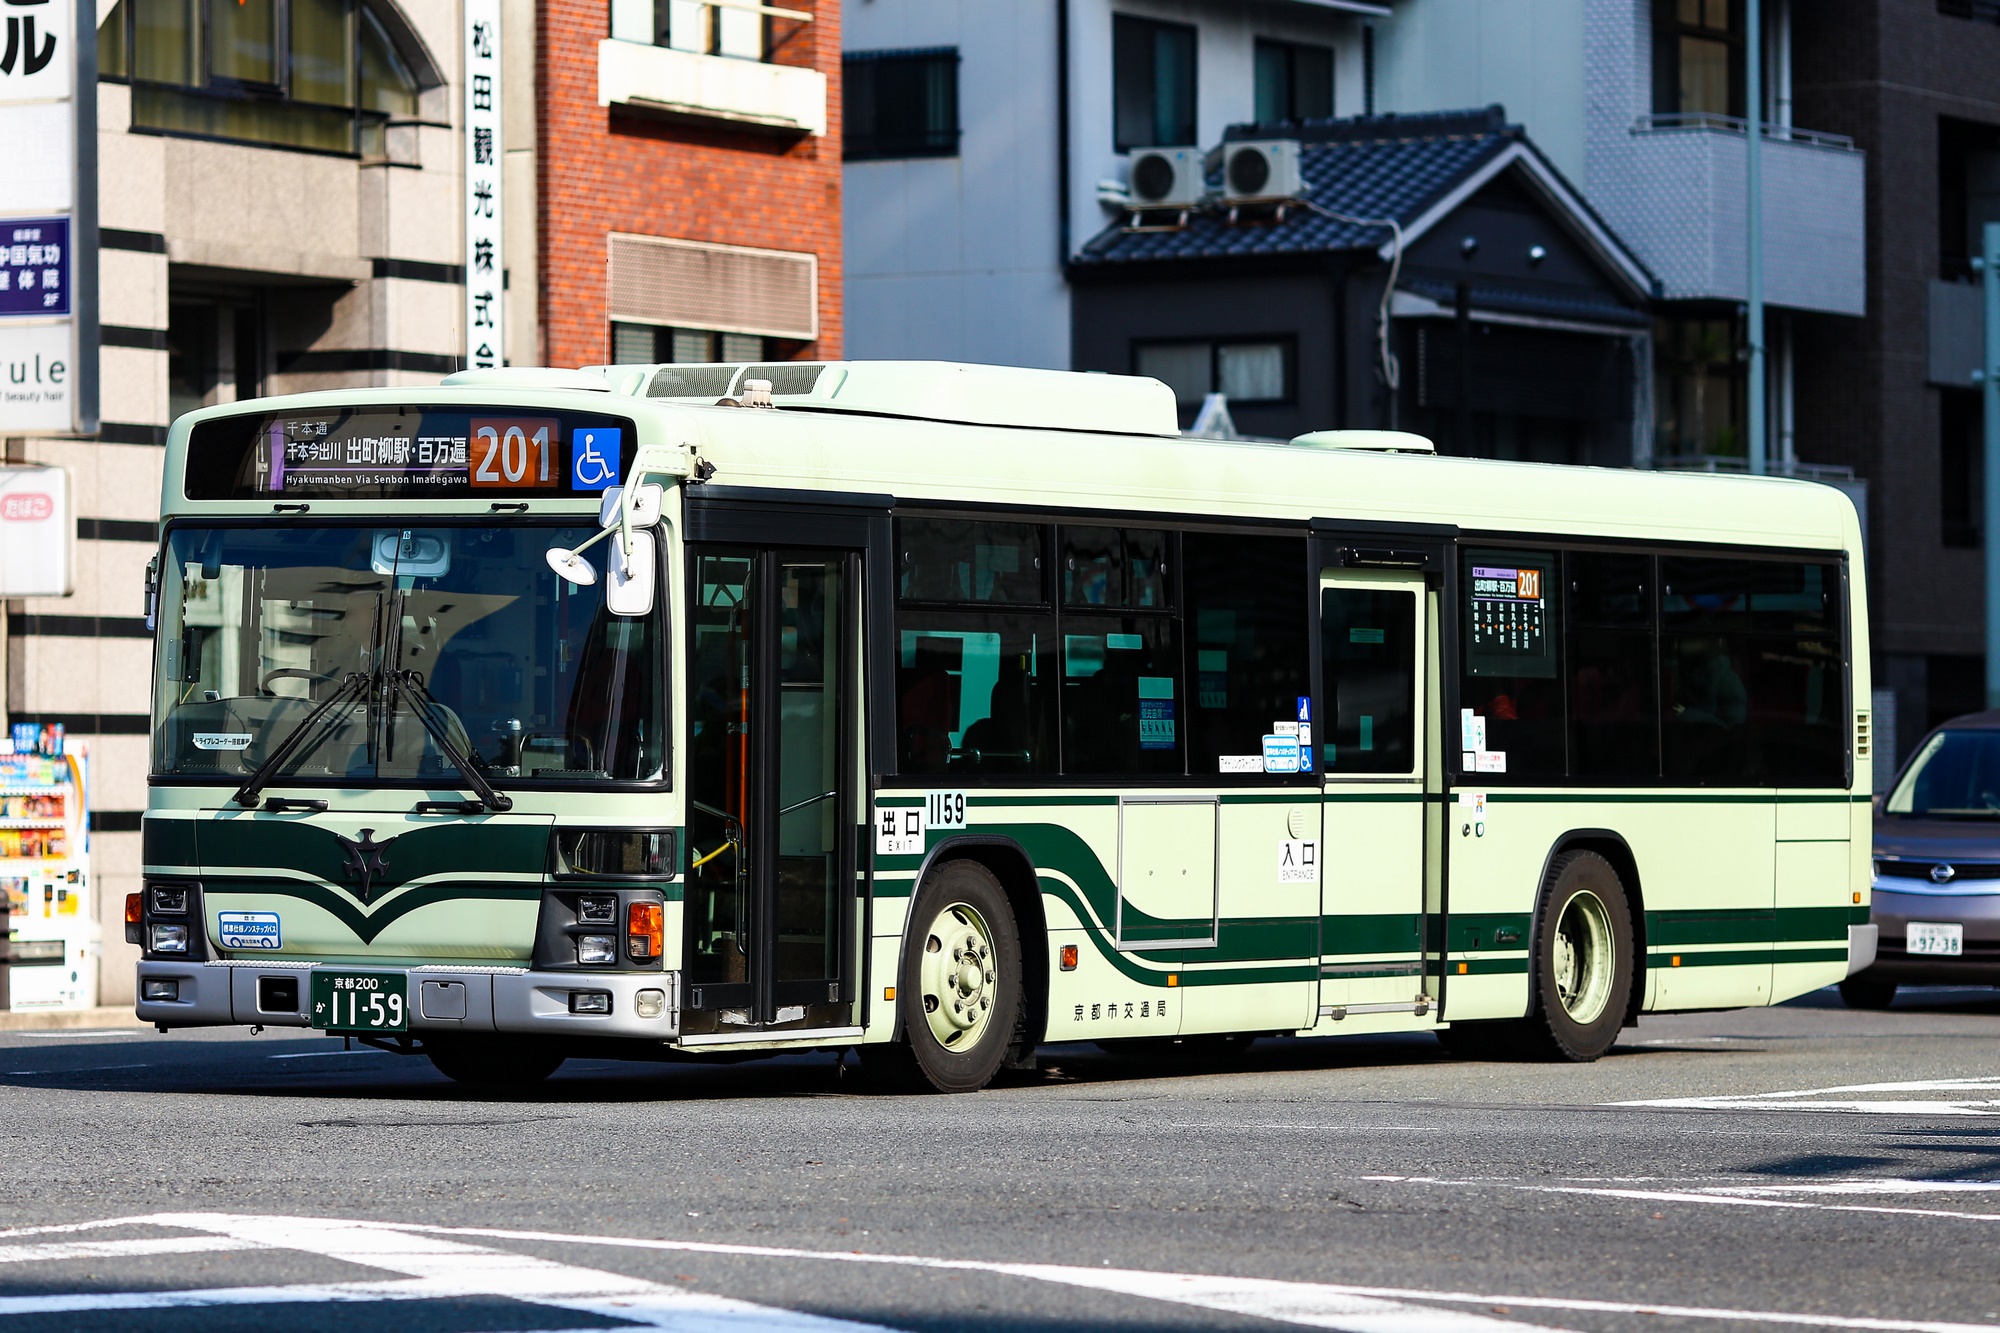 京都市バス いすゞPJ-LV234N1 1159号車 201系統 四条堀川にて